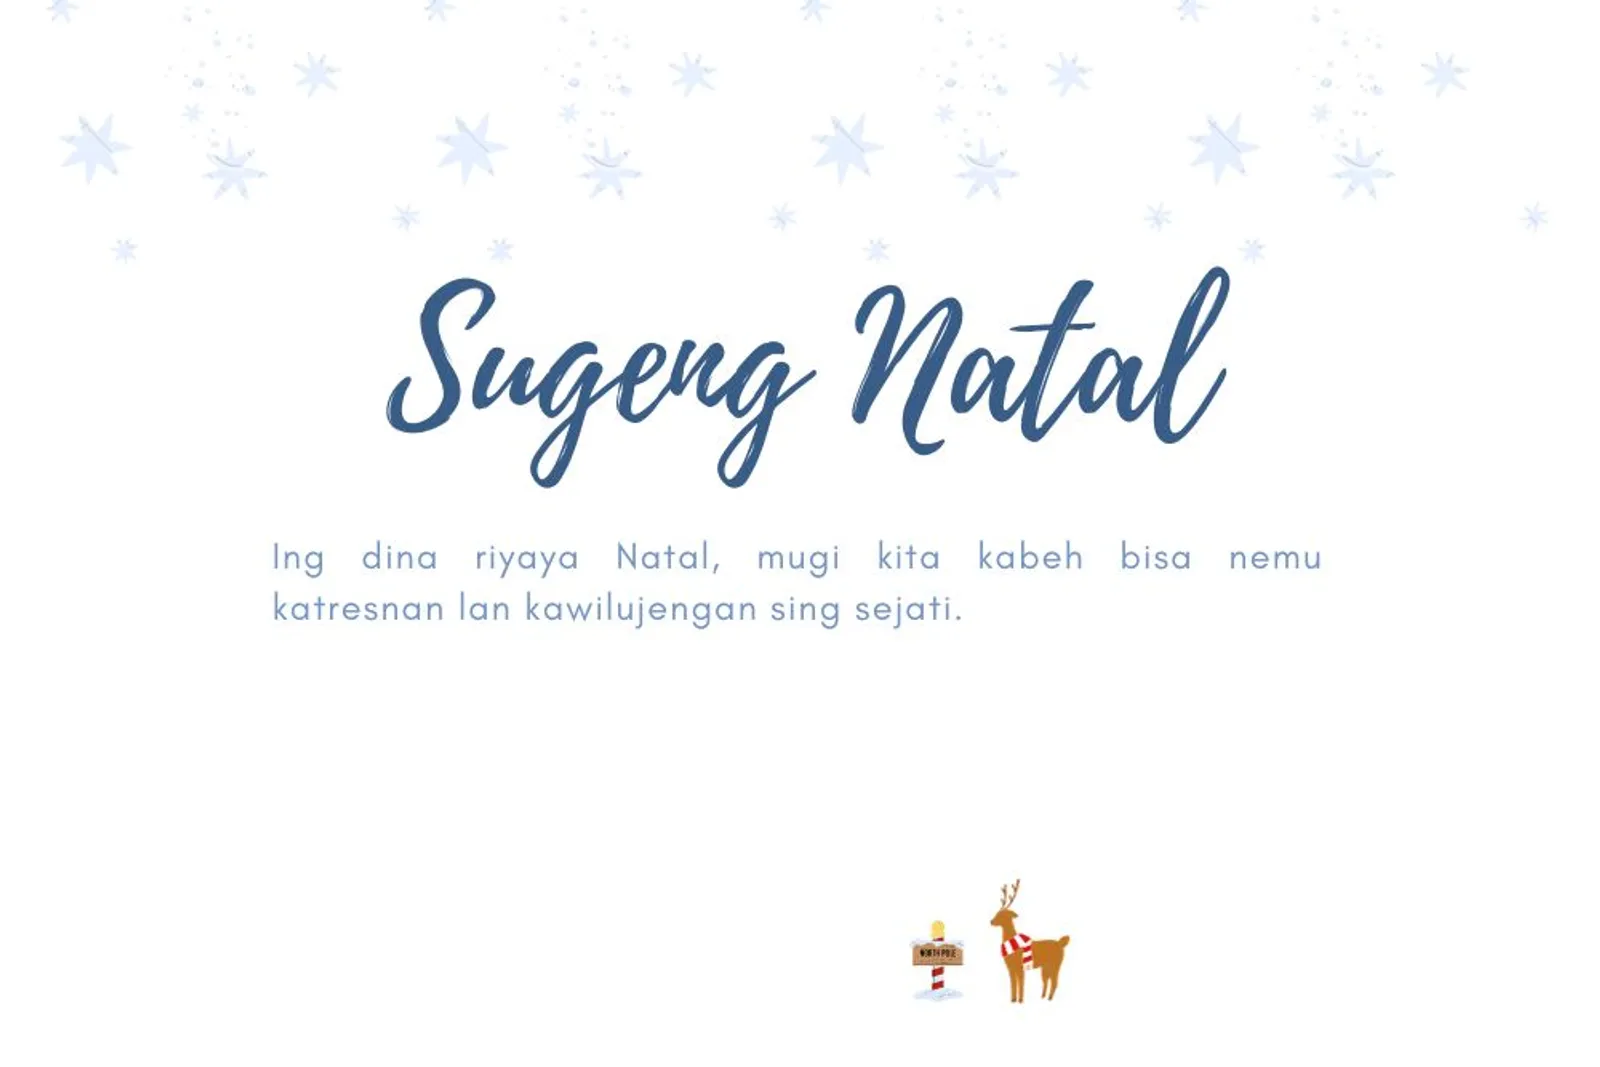 10 Ucapan Selamat Natal Dalam Bahasa Jawa Lengkap dengan Gambar